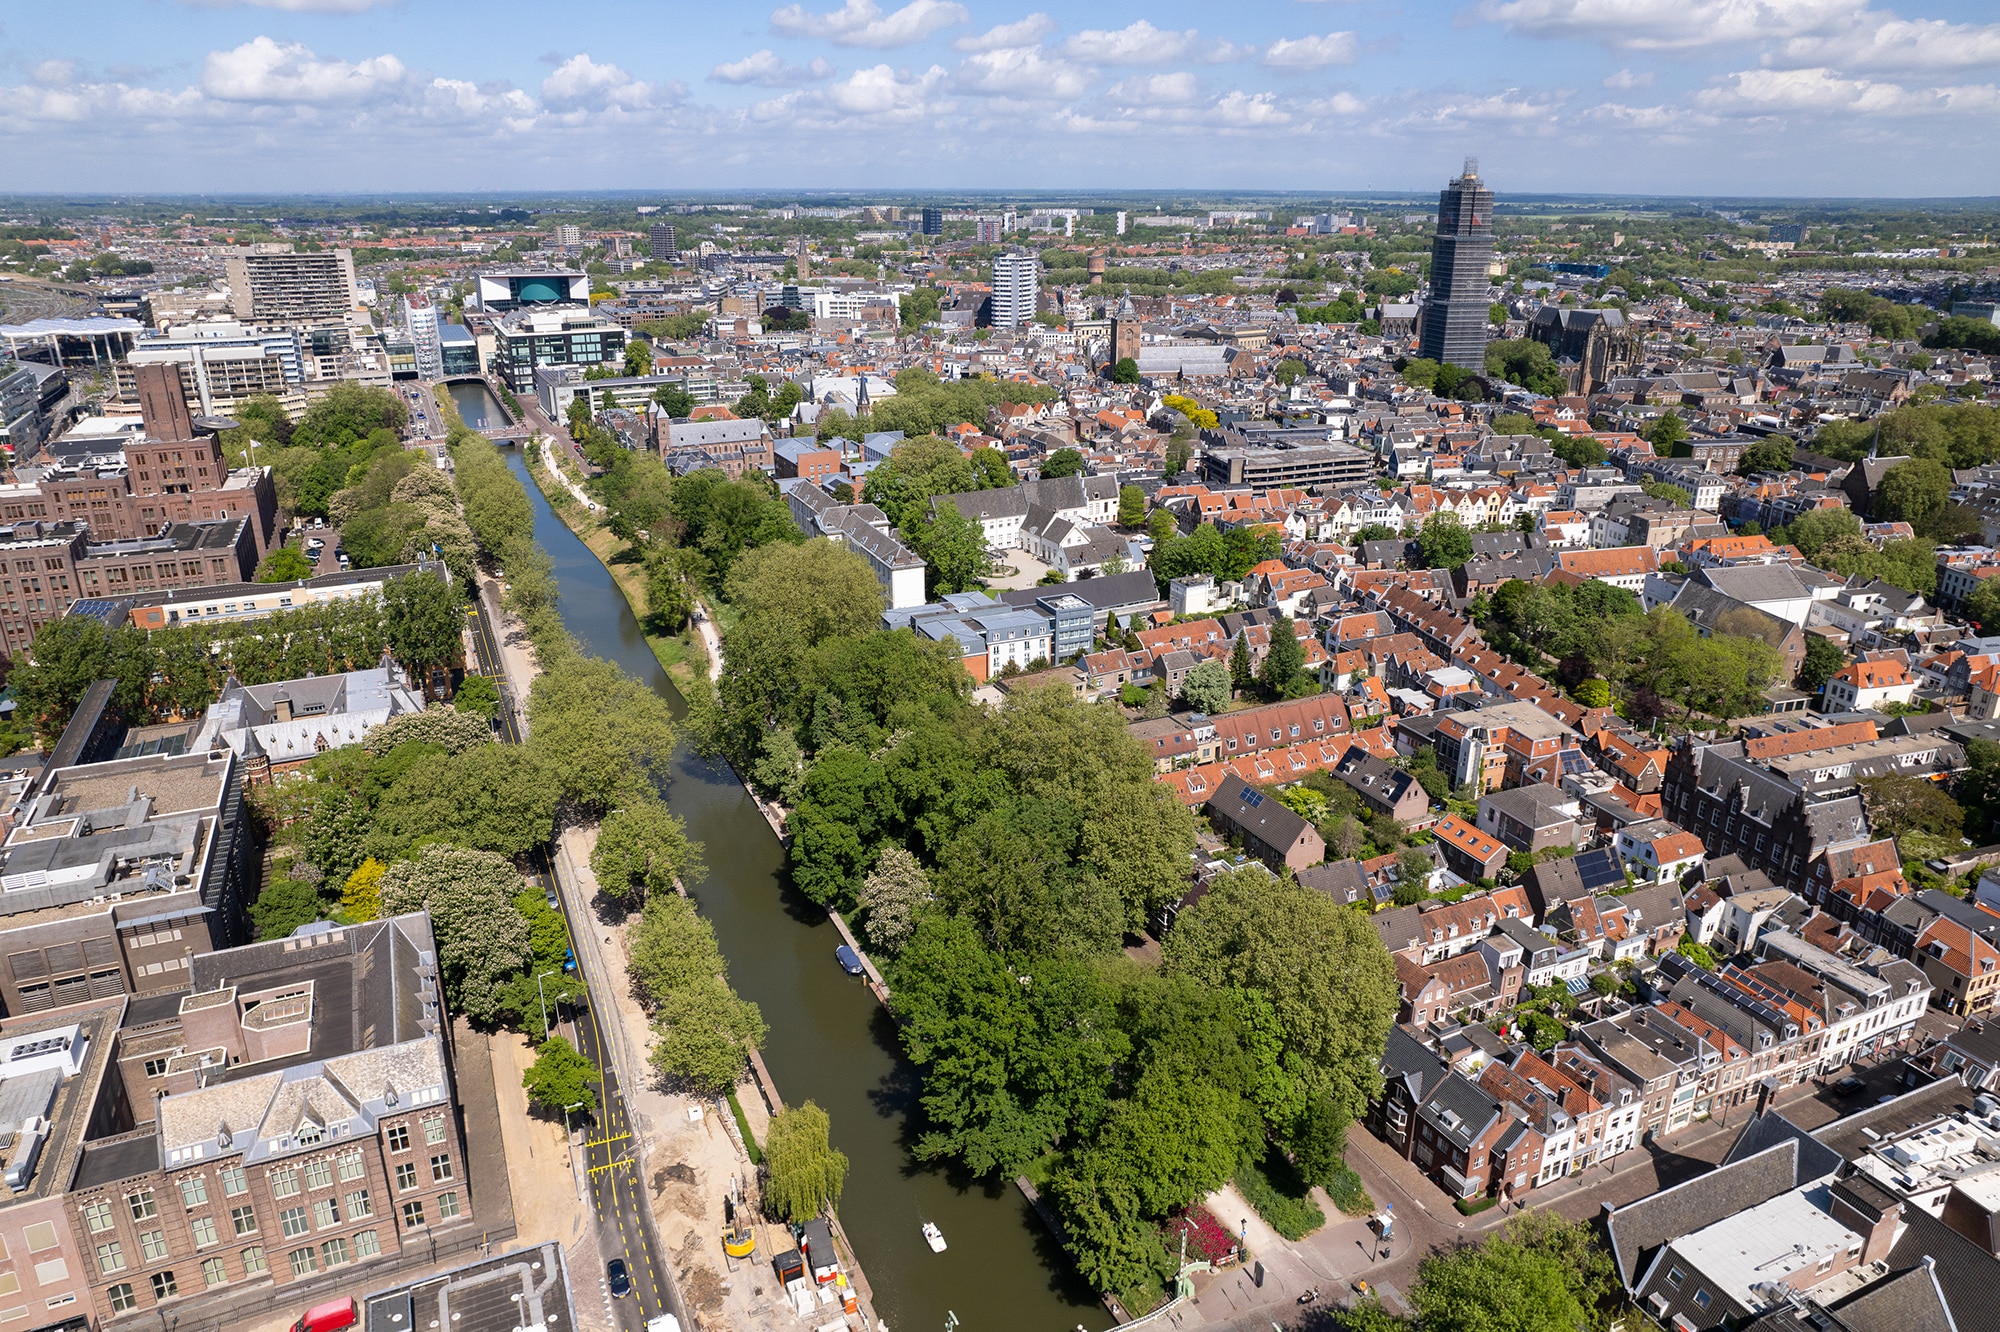 Das Gewinnerprojekt stellt die historische Beziehung zum Wasser im Herzen von Utrecht wieder her. Bildquelle: © 2021 OKRA landschapsarchitecten